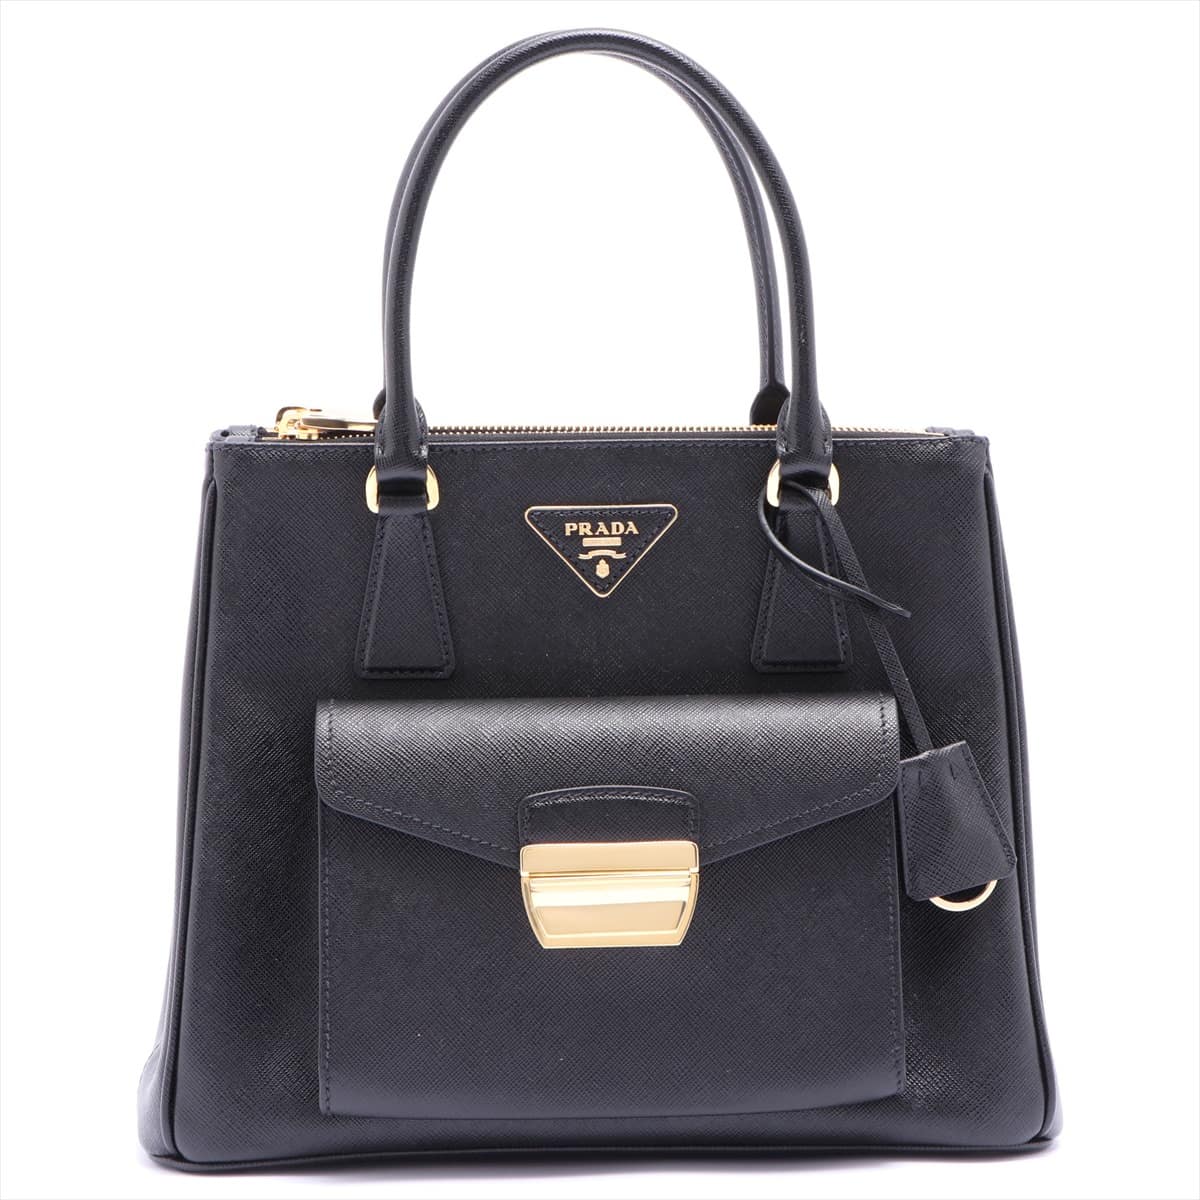 Prada Saffiano Lux Metropolis 2way handbag Black 1BA256 open papers